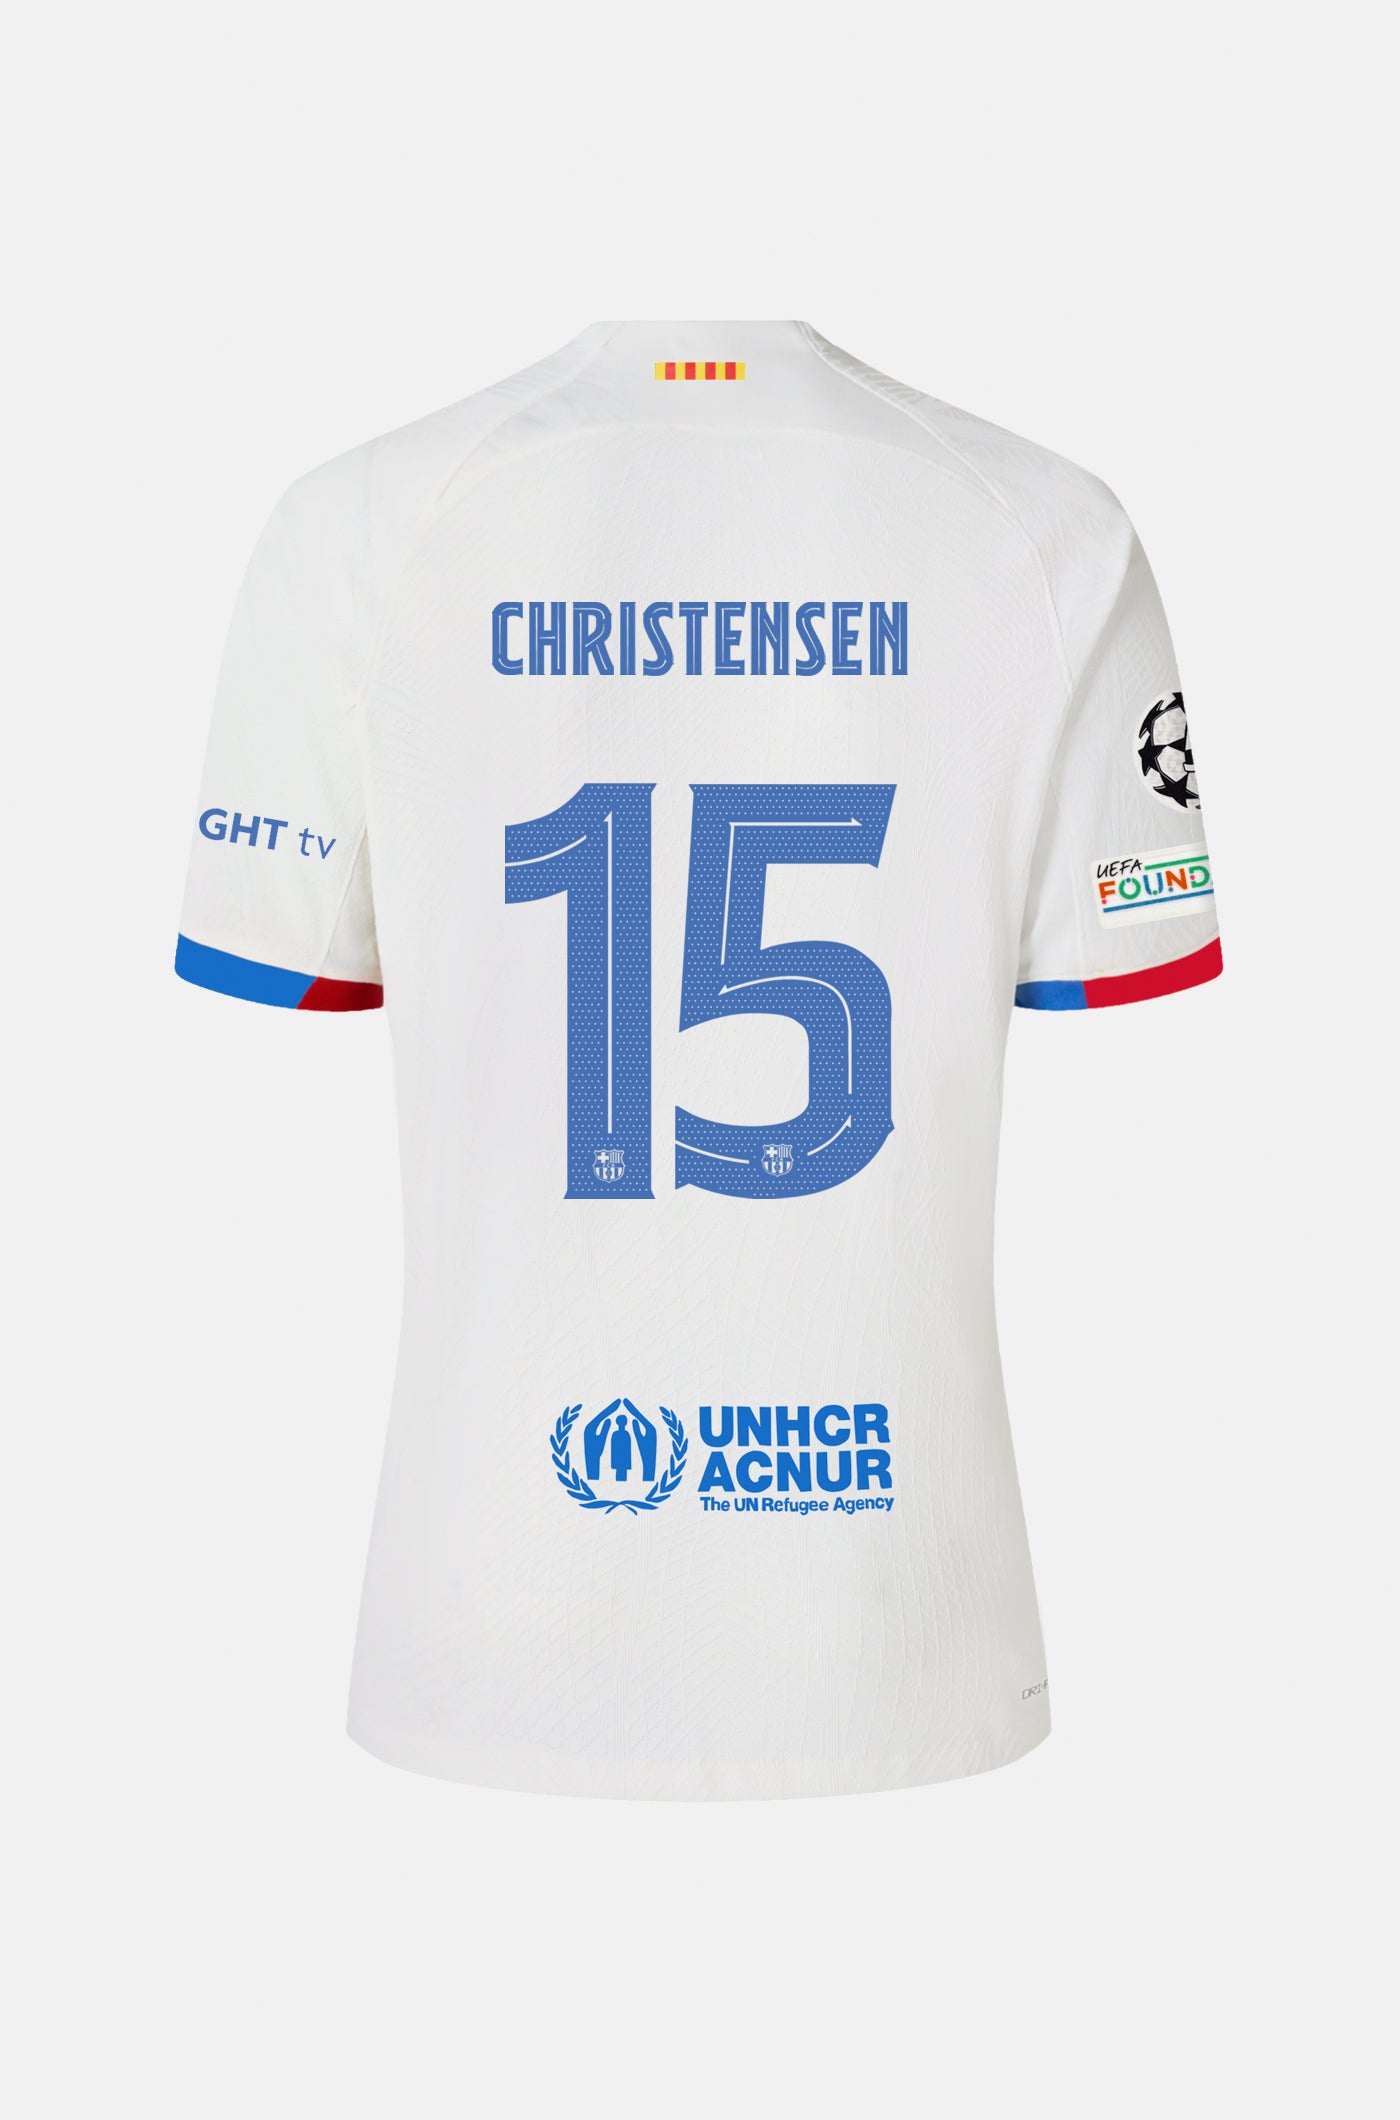 UCL FC Barcelona away shirt 23/24 Player’s Edition - CHRISTENSEN